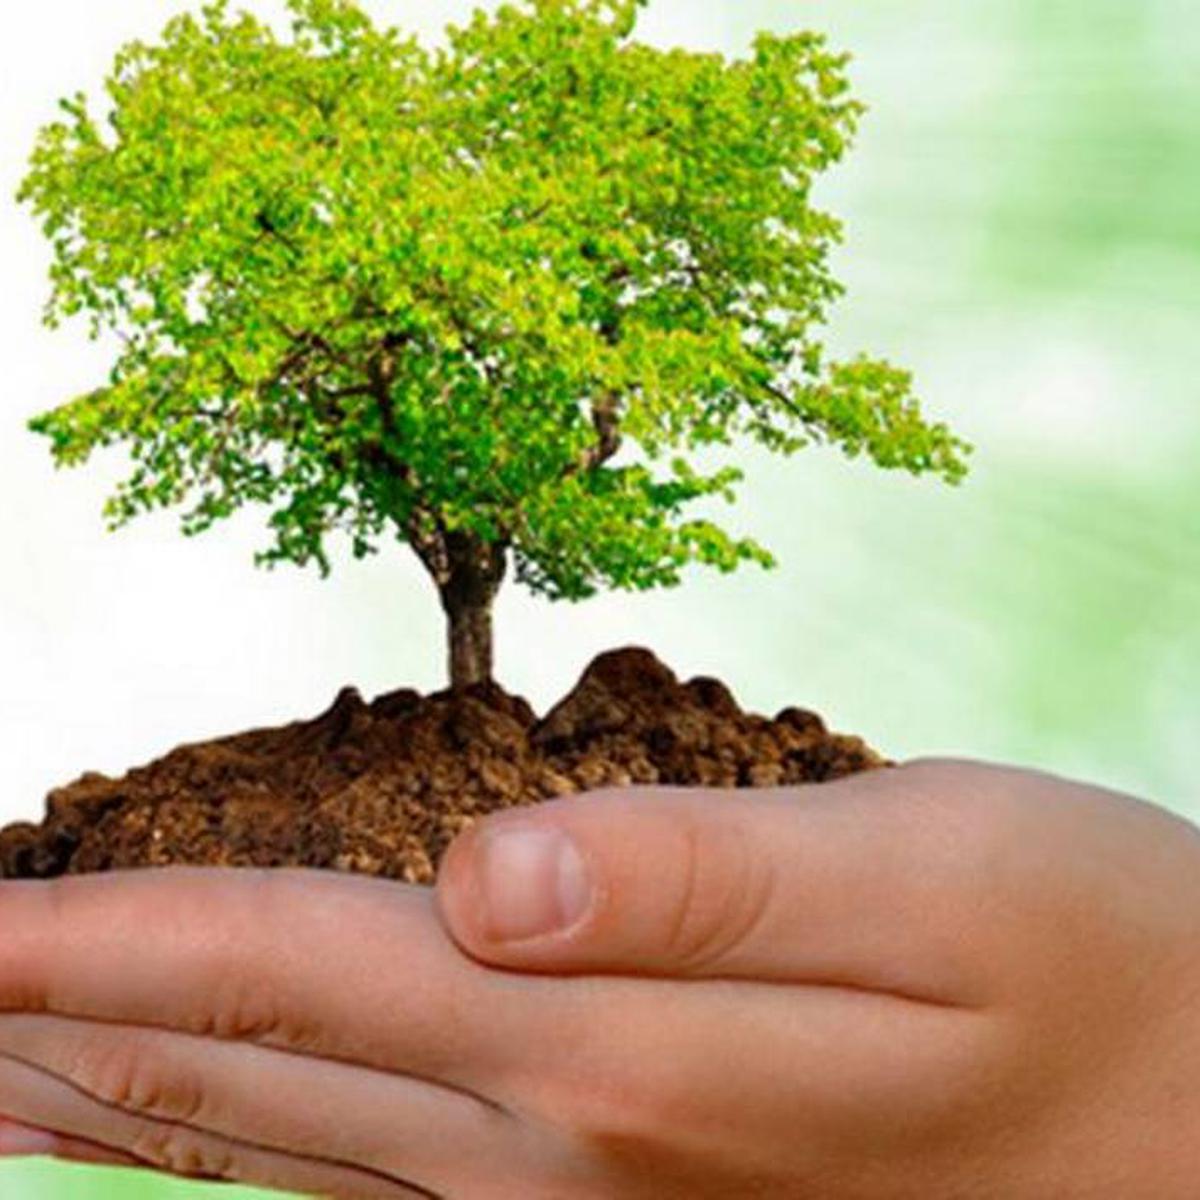 Día Nacional del Árbol: pequeñas acciones para cuidar nuestros bosques |  rmmn emcc | VAMOS | EL COMERCIO PERÚ